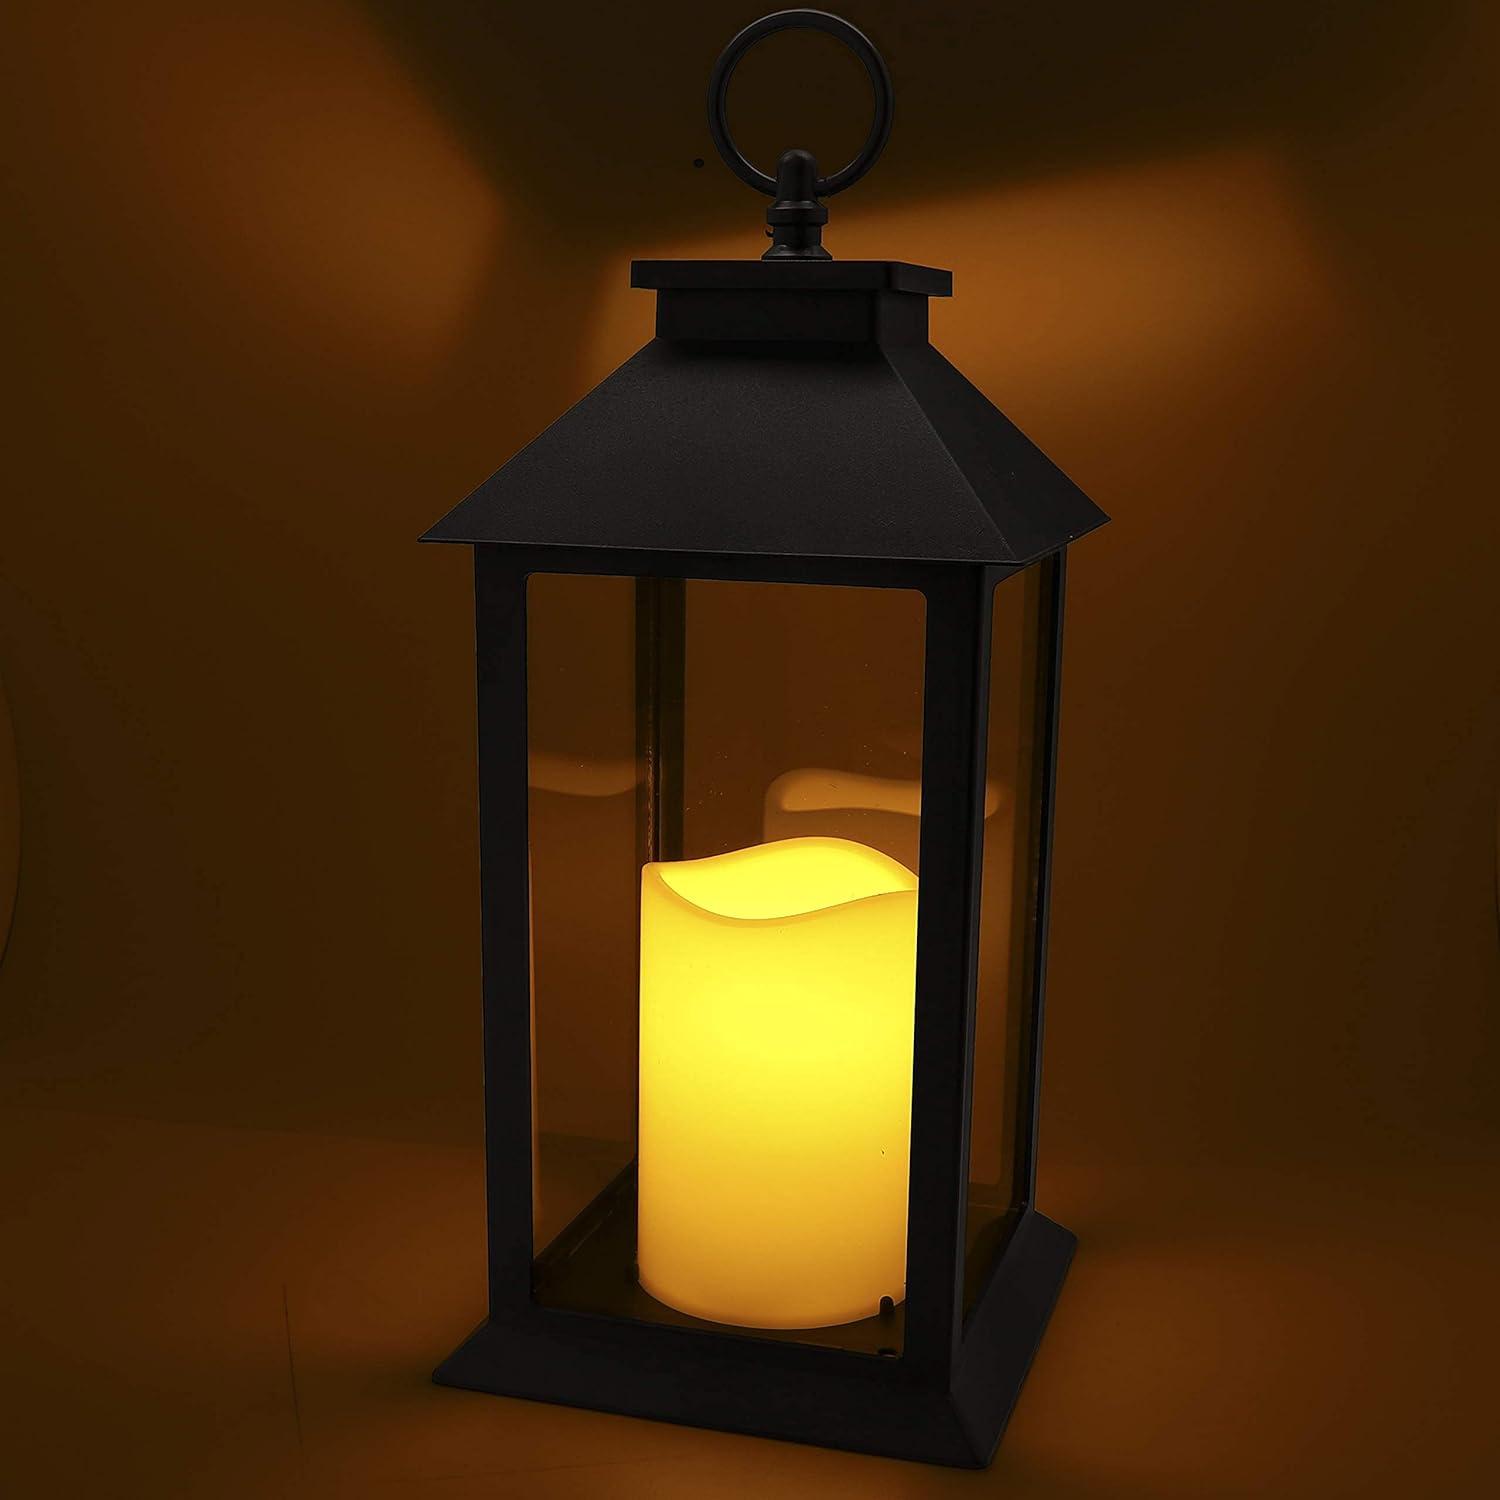 Led Lantern Decorative